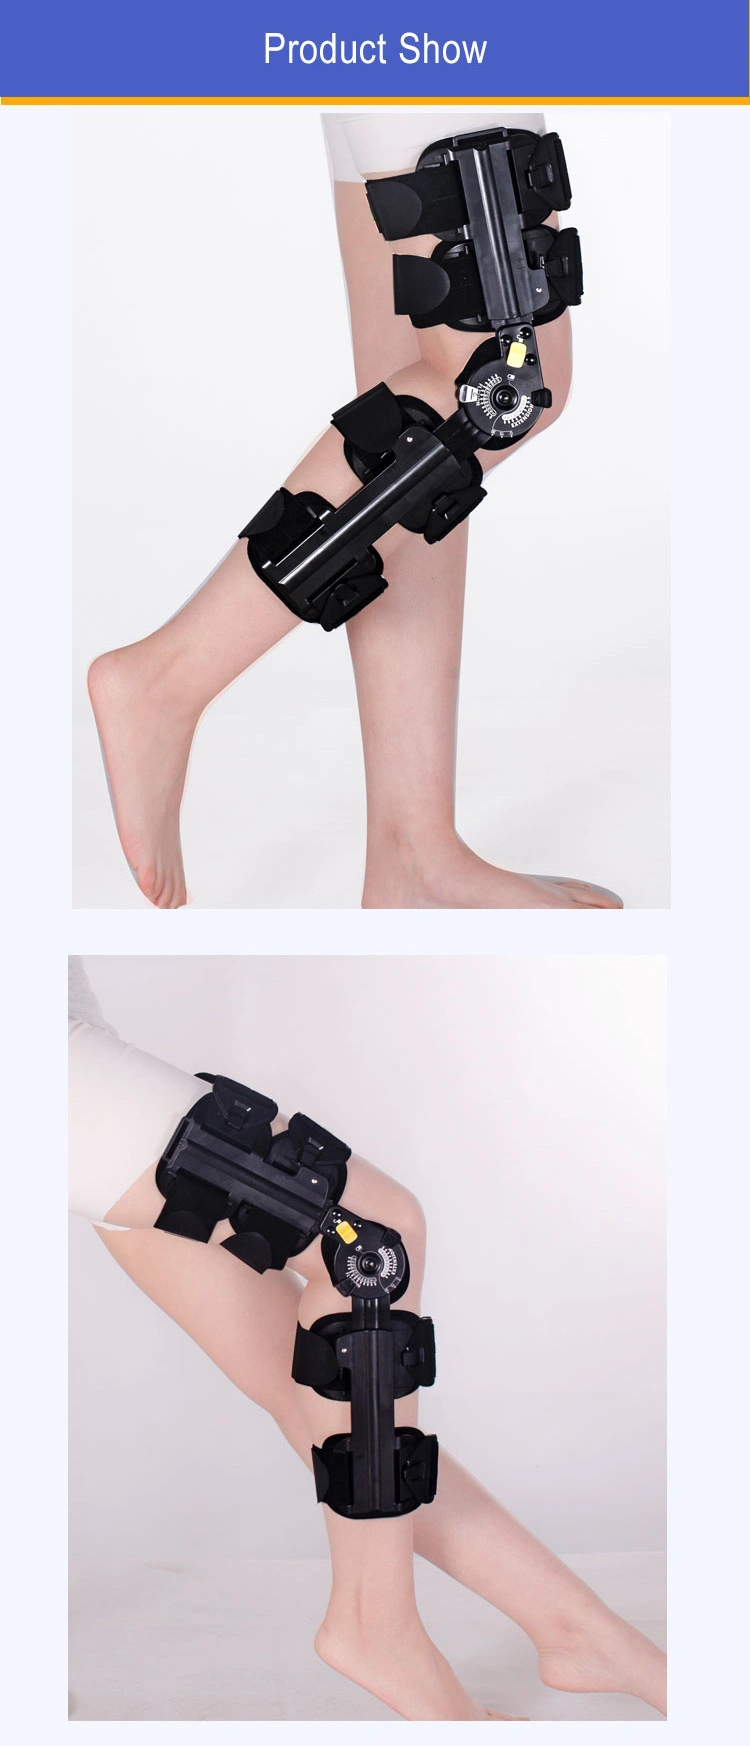 Orthopedic Products Knee Braces Hinge Angle Adjustable Knee Hinges Brace